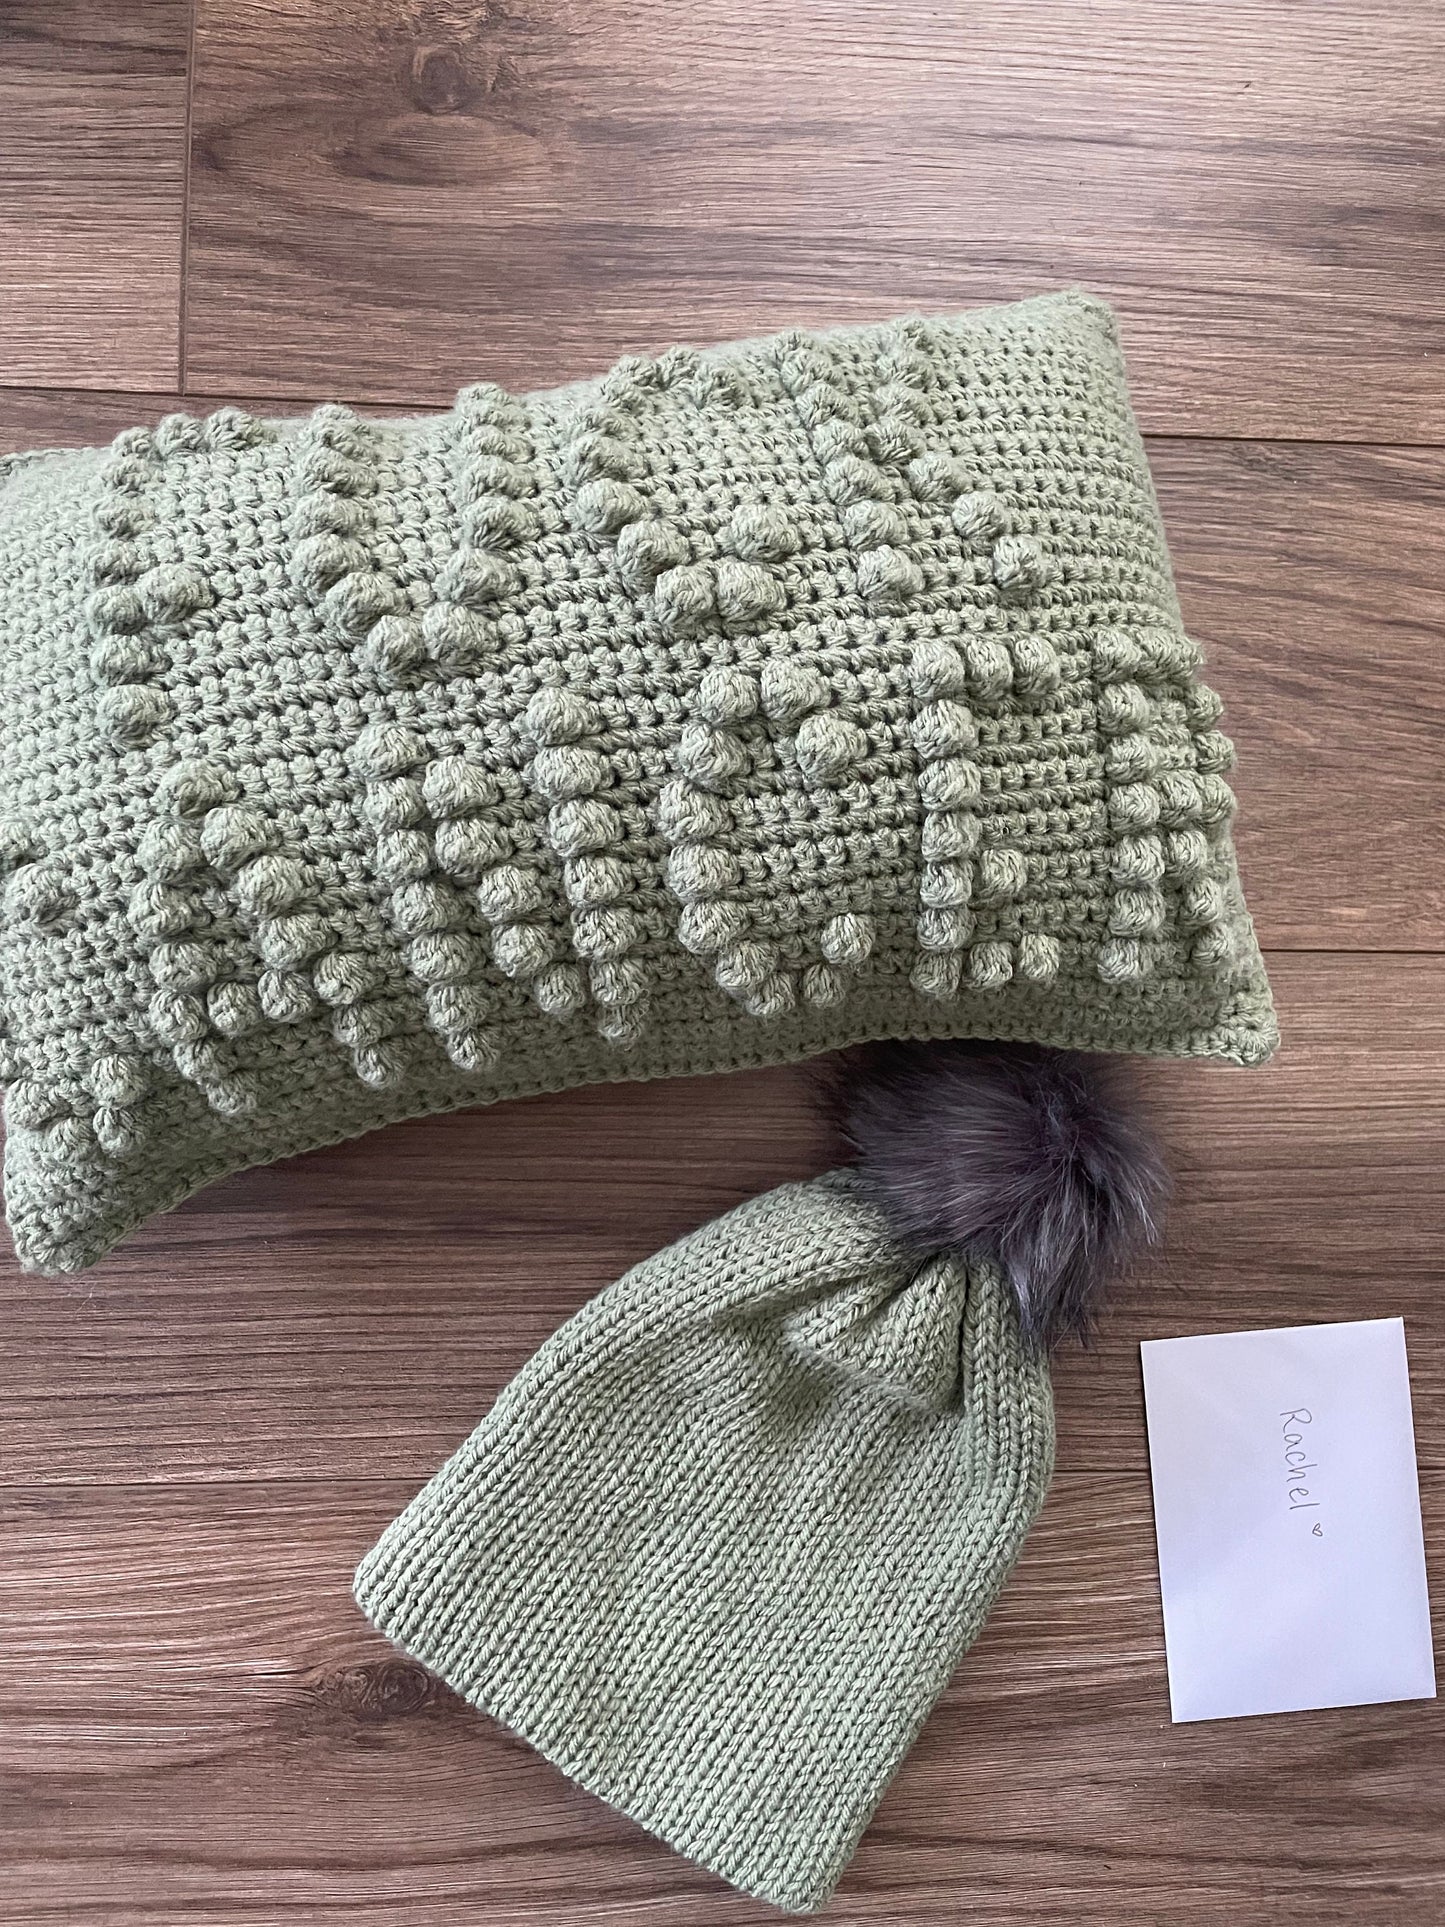 CROCHET PATTERN- Fuck Cancer Crochet Pillow